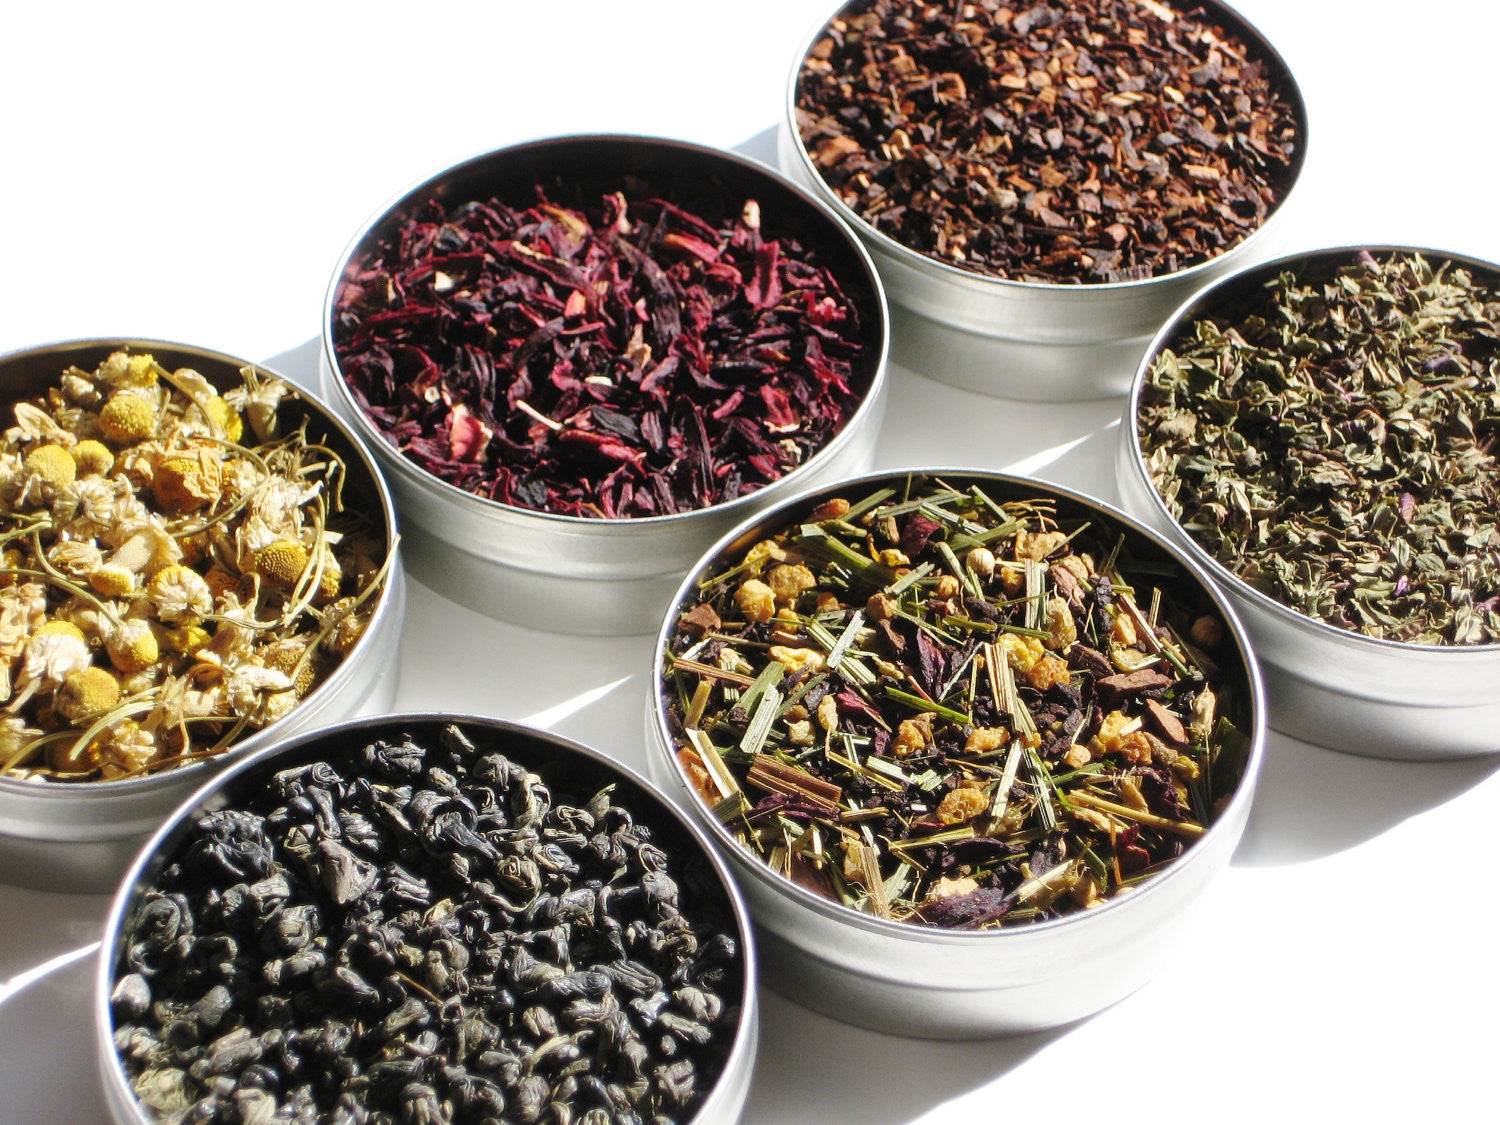 Sample exotic teas